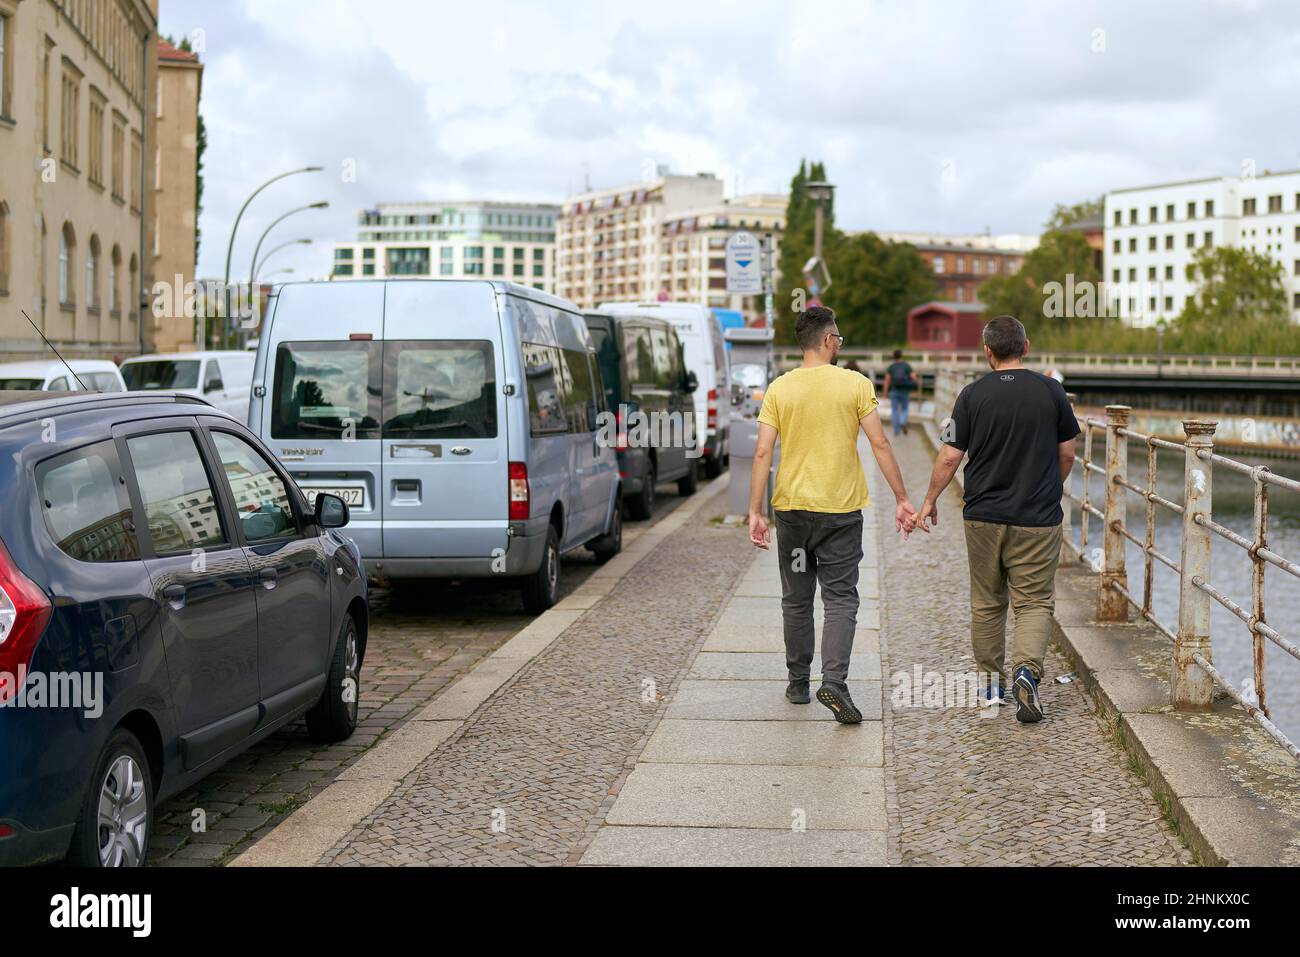 Straßenszene in der Berliner Innenstadt mit homosexuellem Paar auf einem Bürgersteig Stockfoto